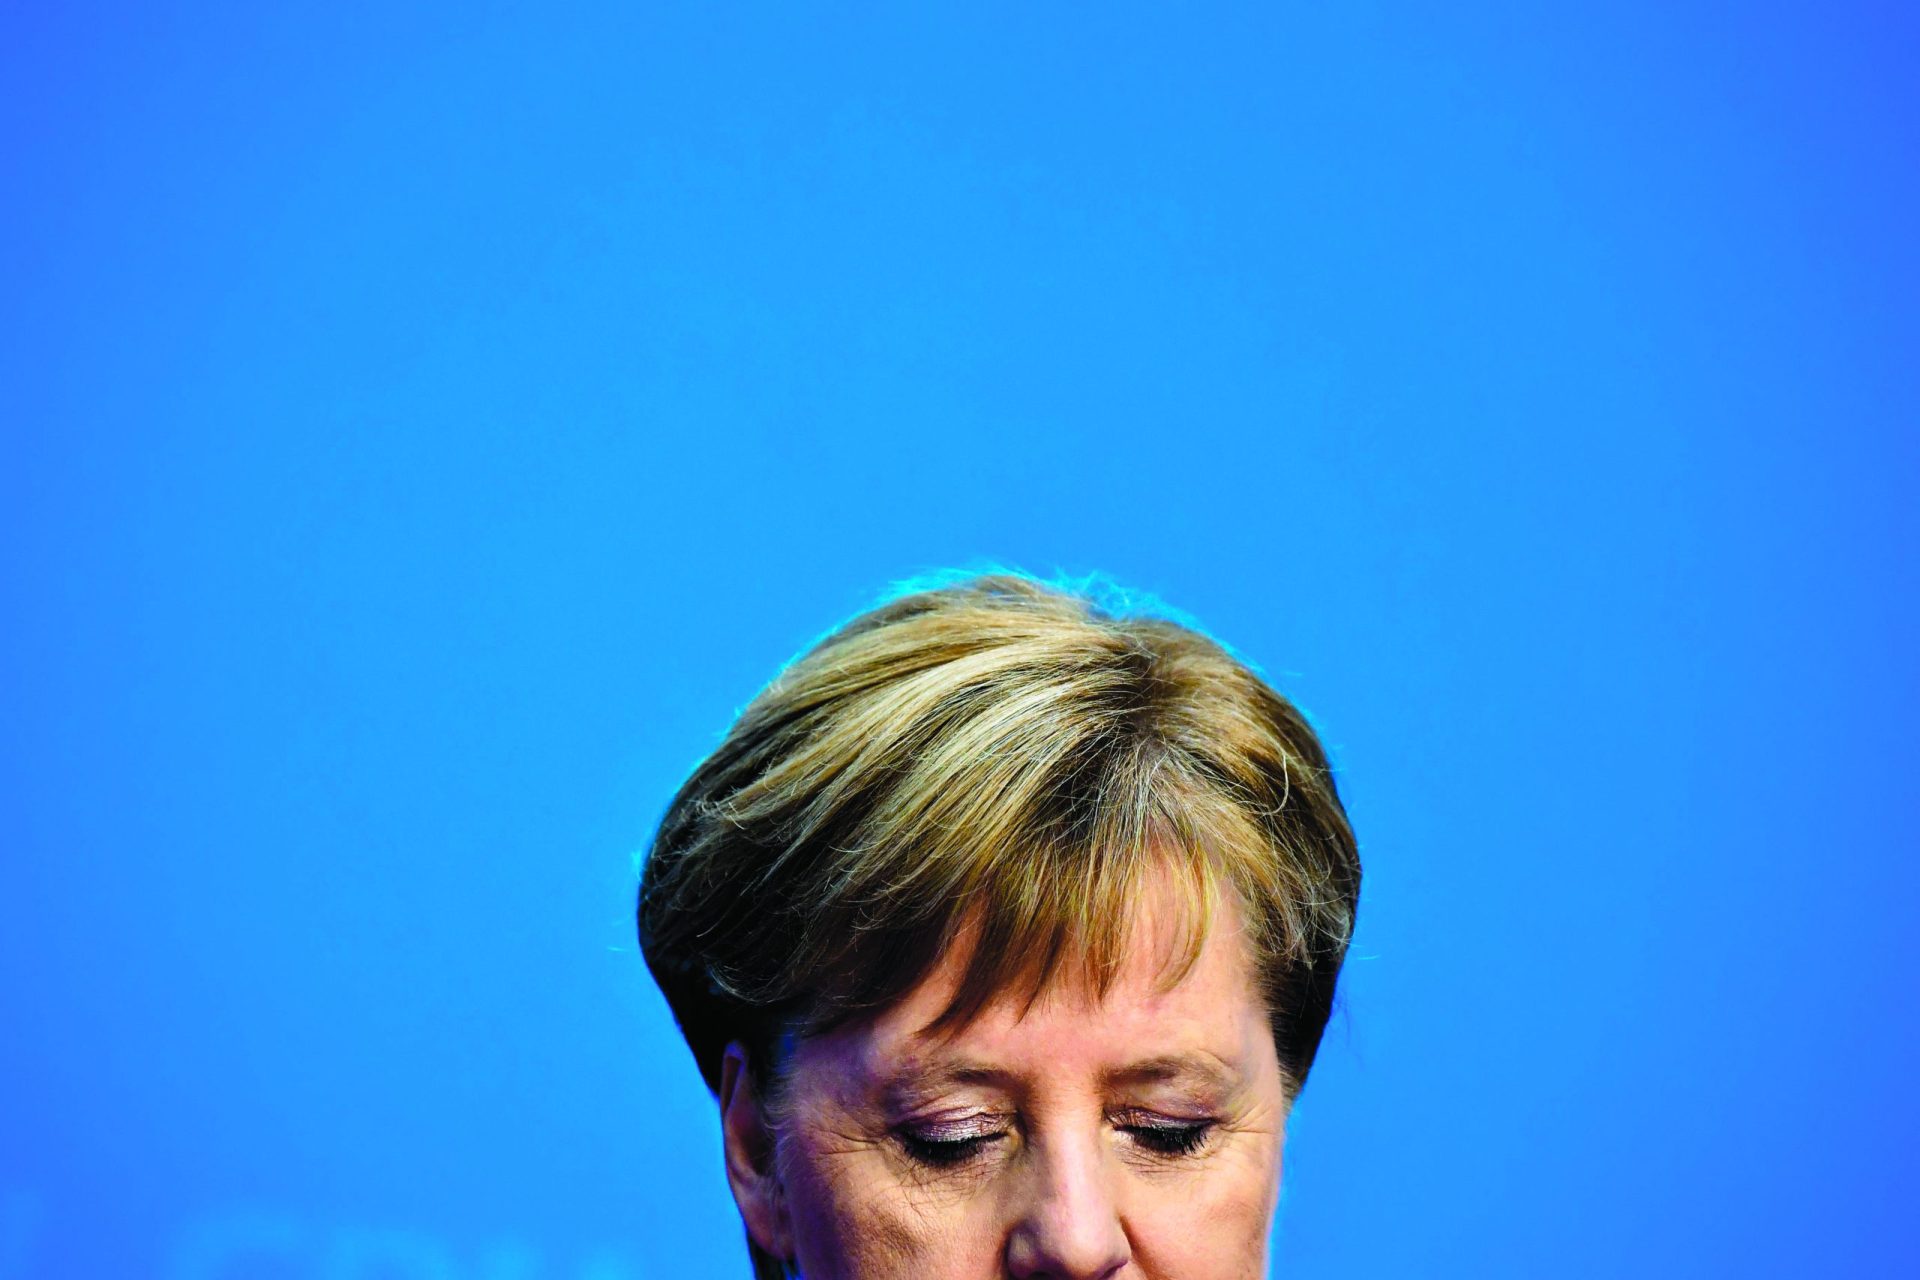 O adeus de Merkel. “É tempo de abrir um novo capítulo”